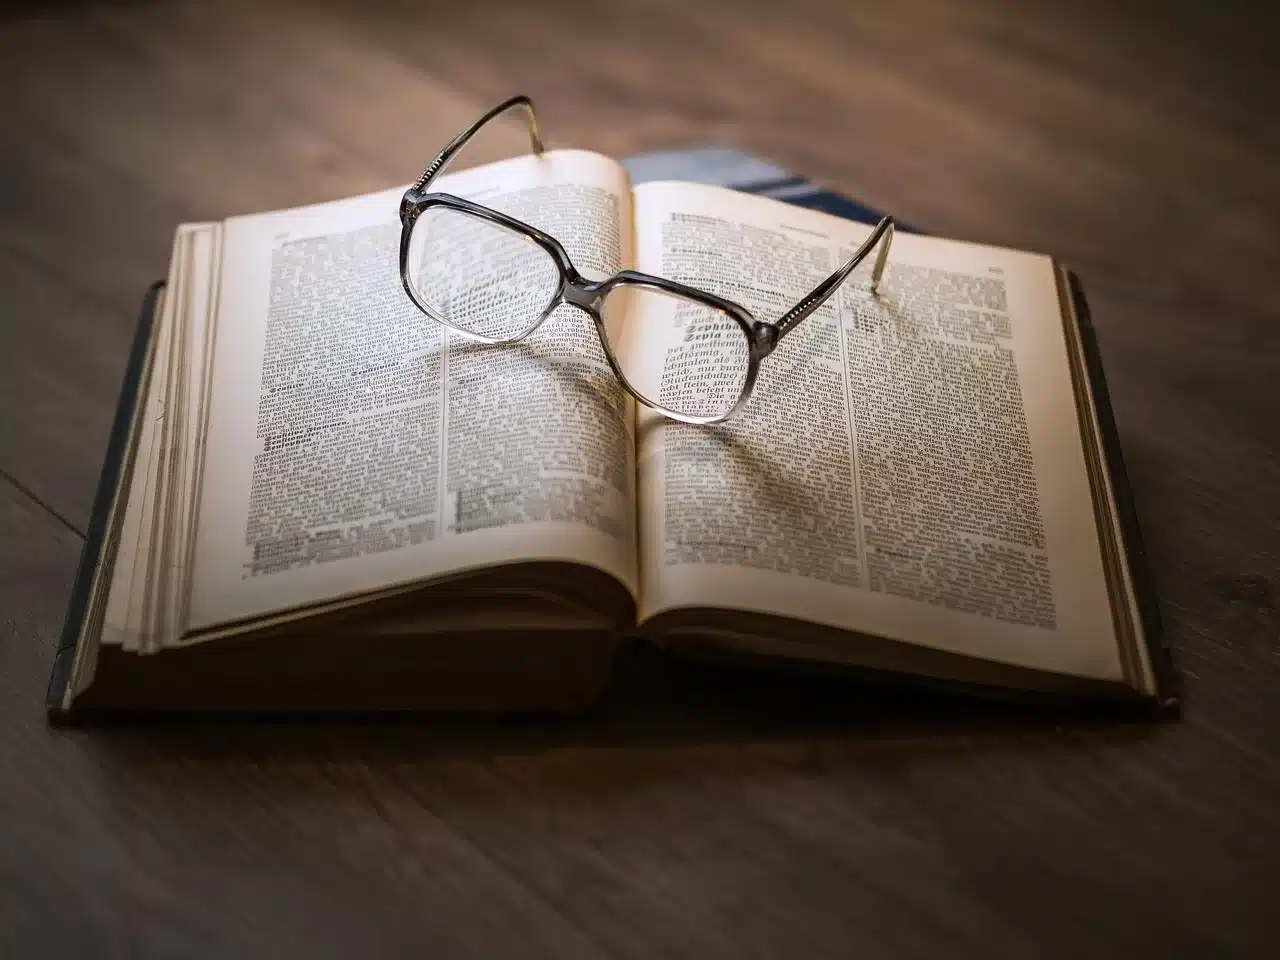 Paire de lunettes sur un livre ouvert illustrant le fait d'actualiser ses connaissances